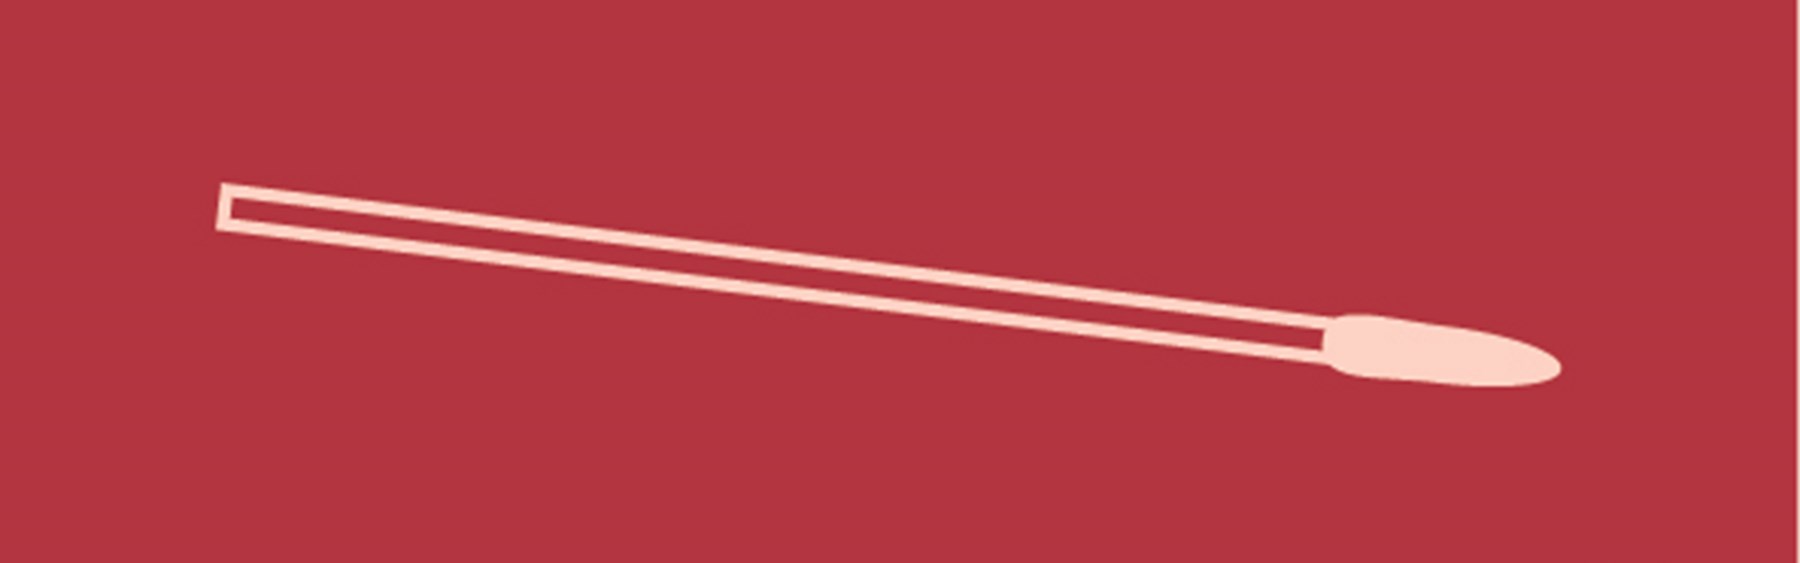 Tegning af en vatpind, som bruges til podning og coronatests. Baggrunden på billedet er rødt.